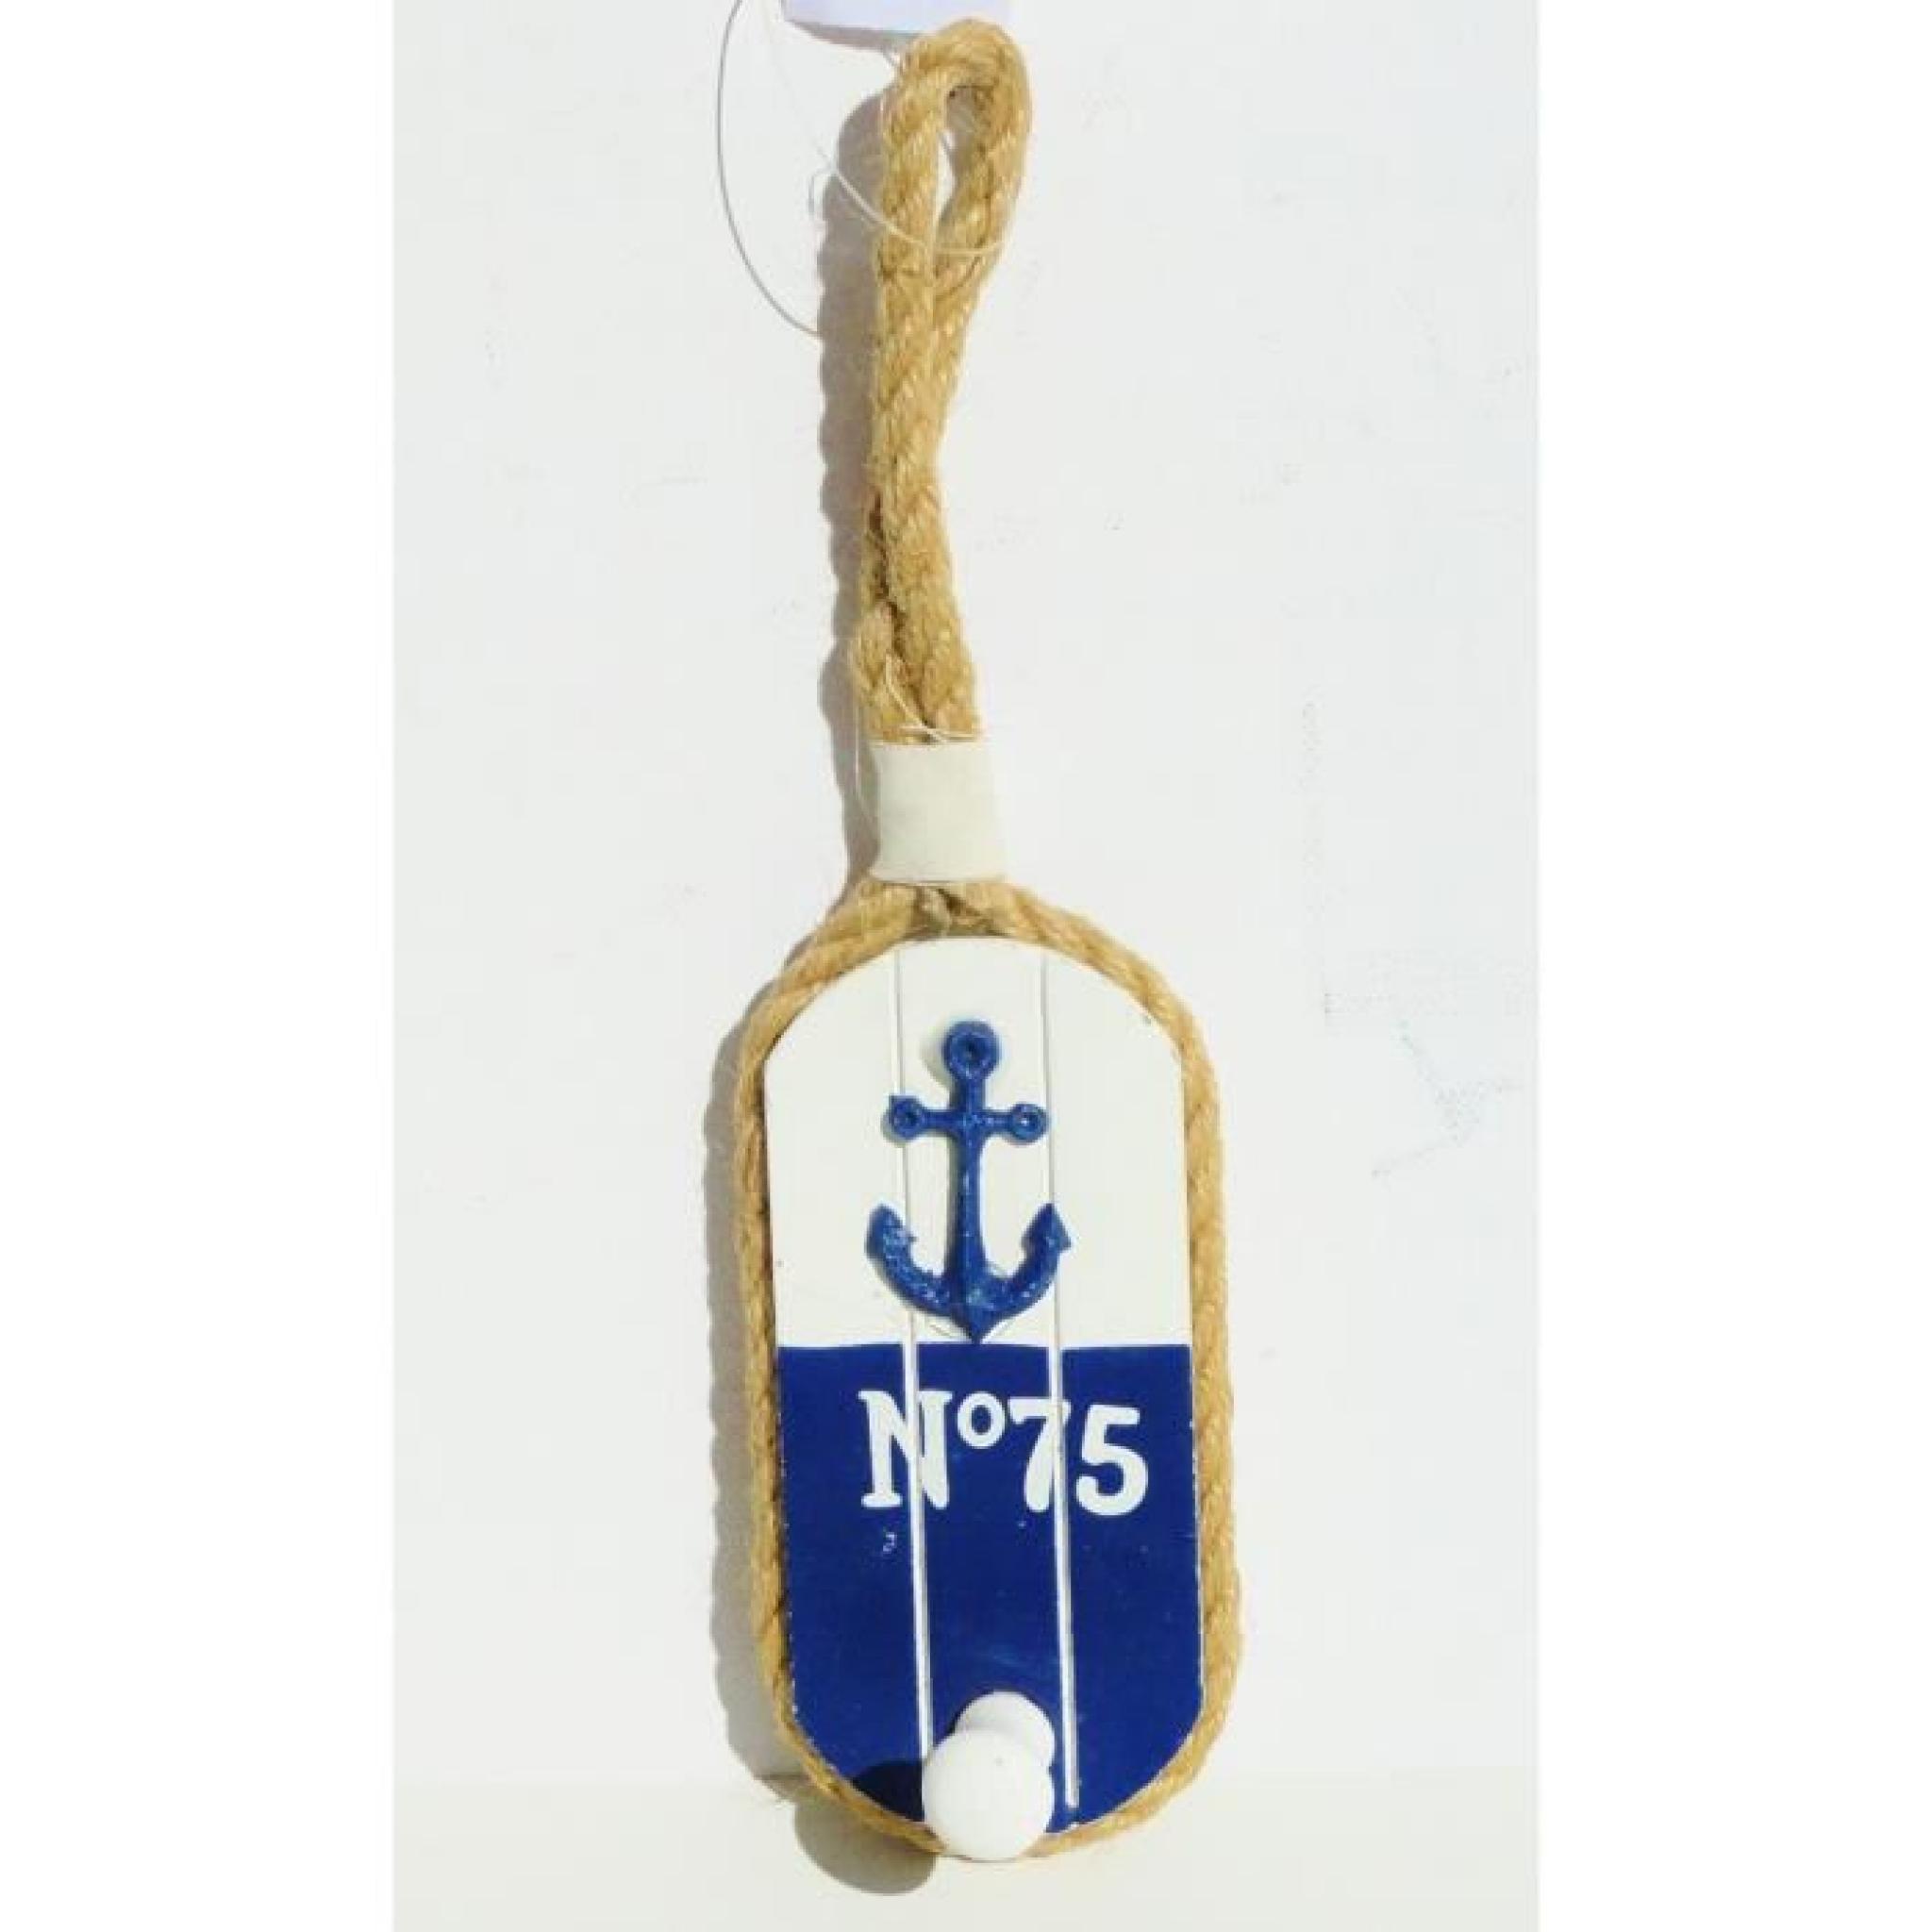  Porte manteau patère marin ancre de bateau bleu marin corde de chanvre d'amarrage 26cm